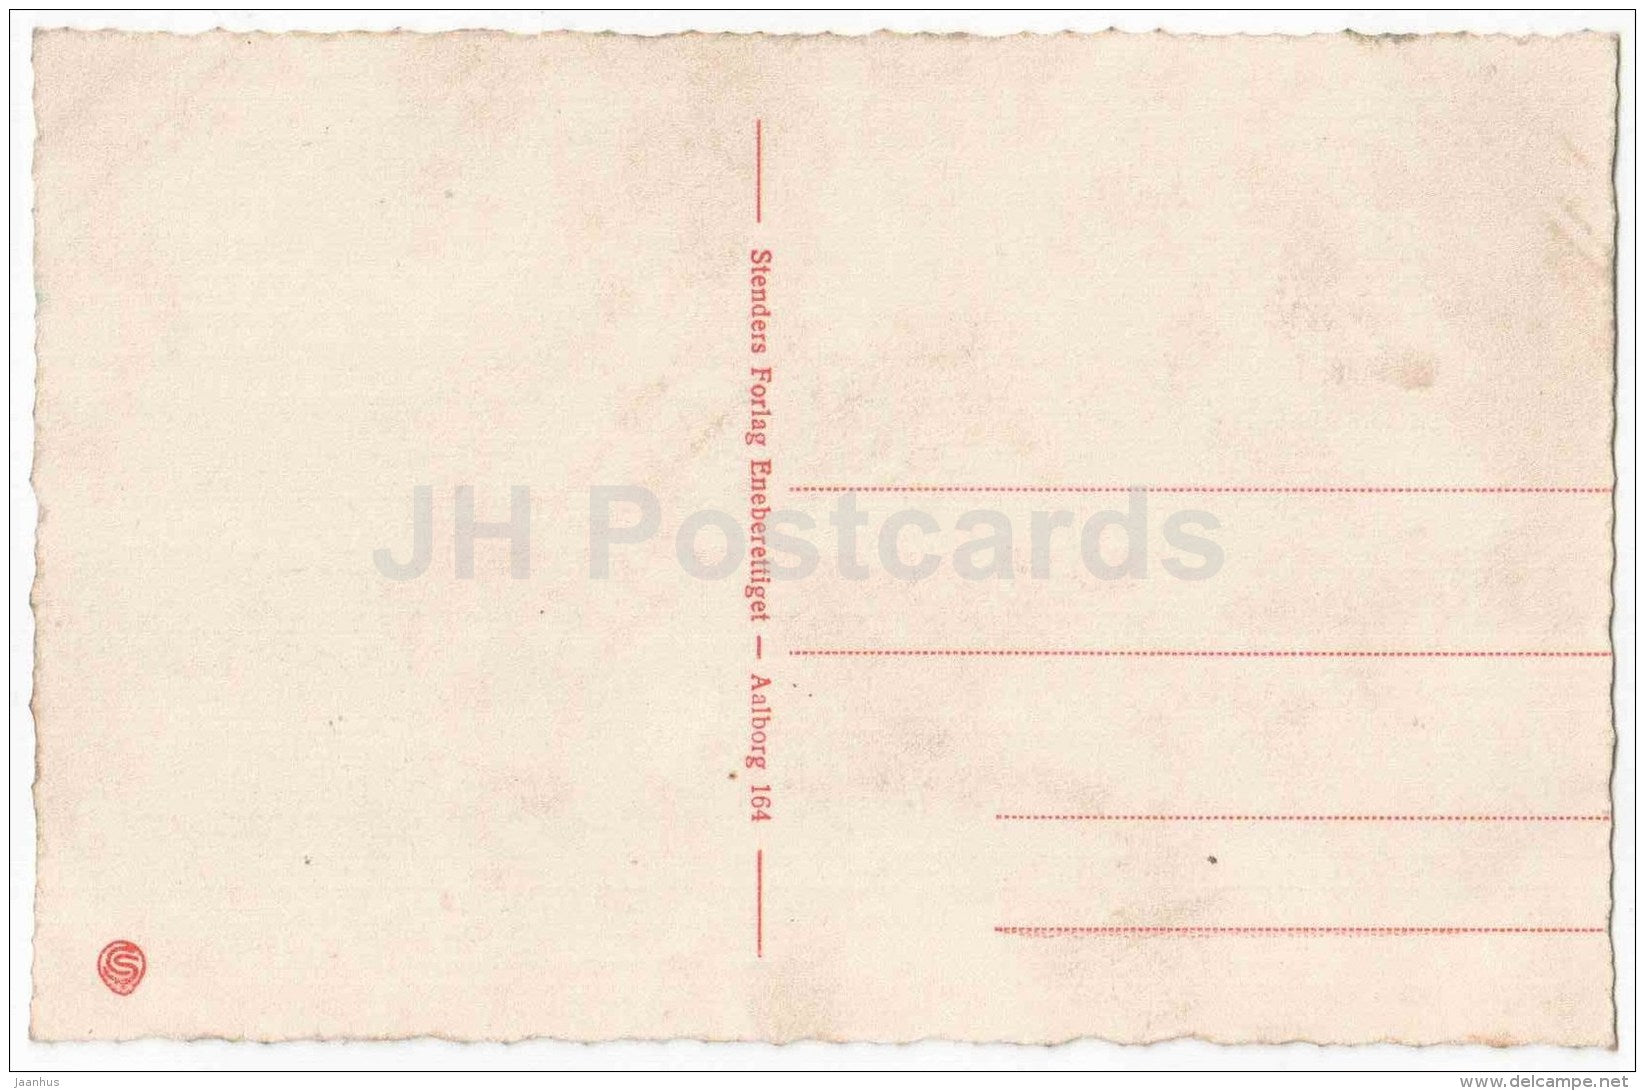 Carolinelund - Aalborg - Denmark - old postcard - unused - JH Postcards